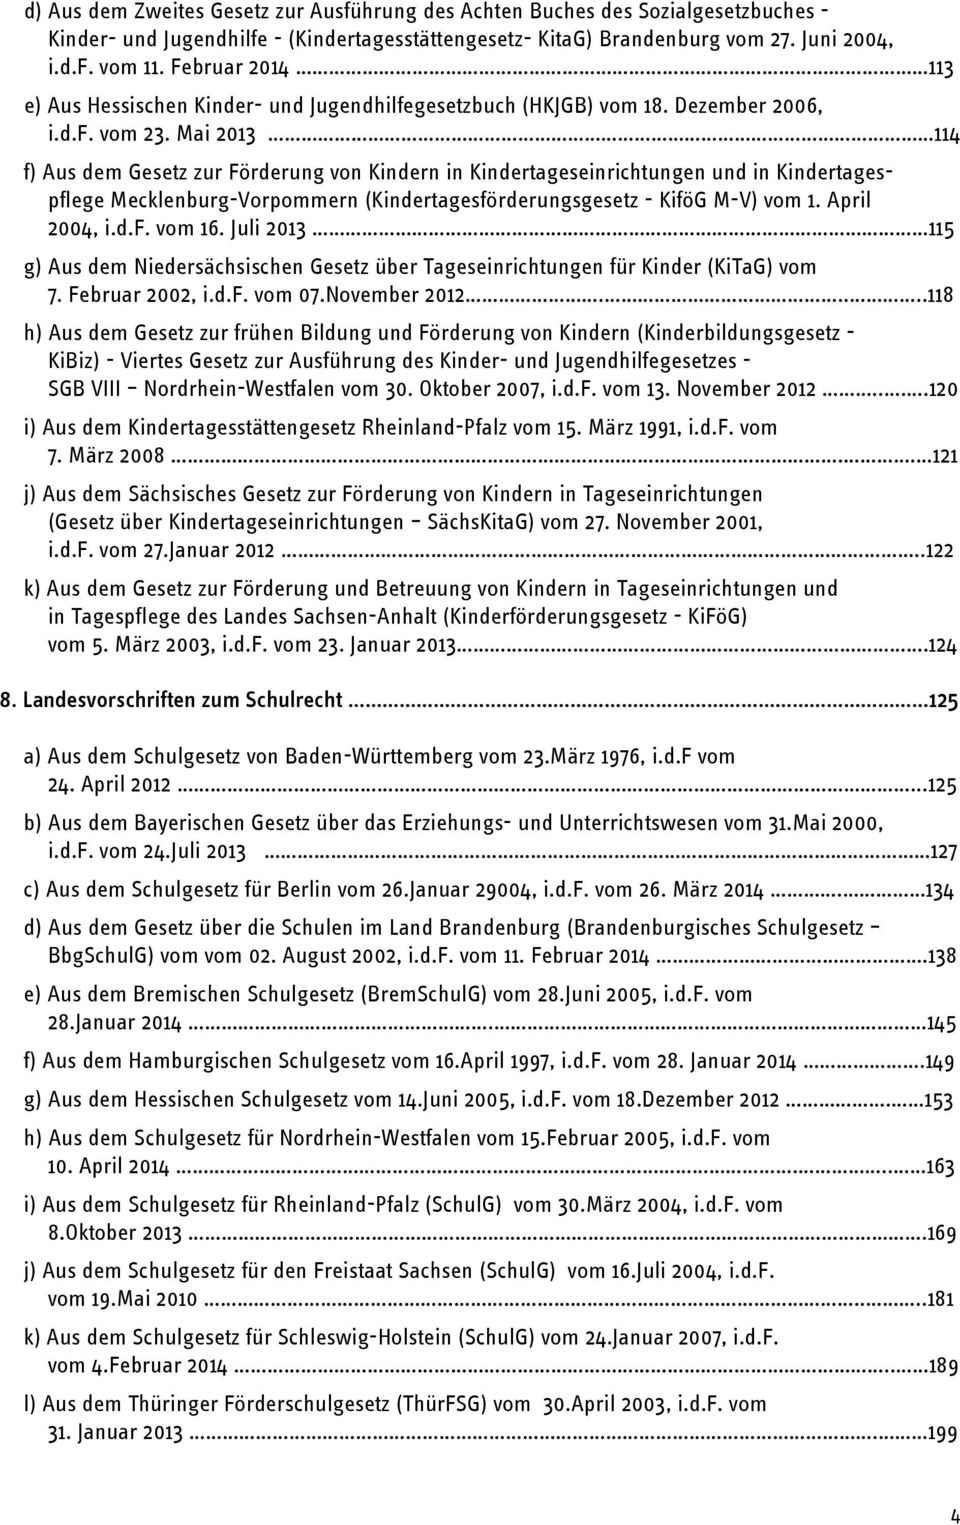 Mai 2013 114 f) Aus dem Gesetz zur Förderung von Kindern in Kindertageseinrichtungen und in Kindertagespflege Mecklenburg-Vorpommern (Kindertagesförderungsgesetz - KiföG M-V) vom 1. April 2004, i.d.f. vom 16.